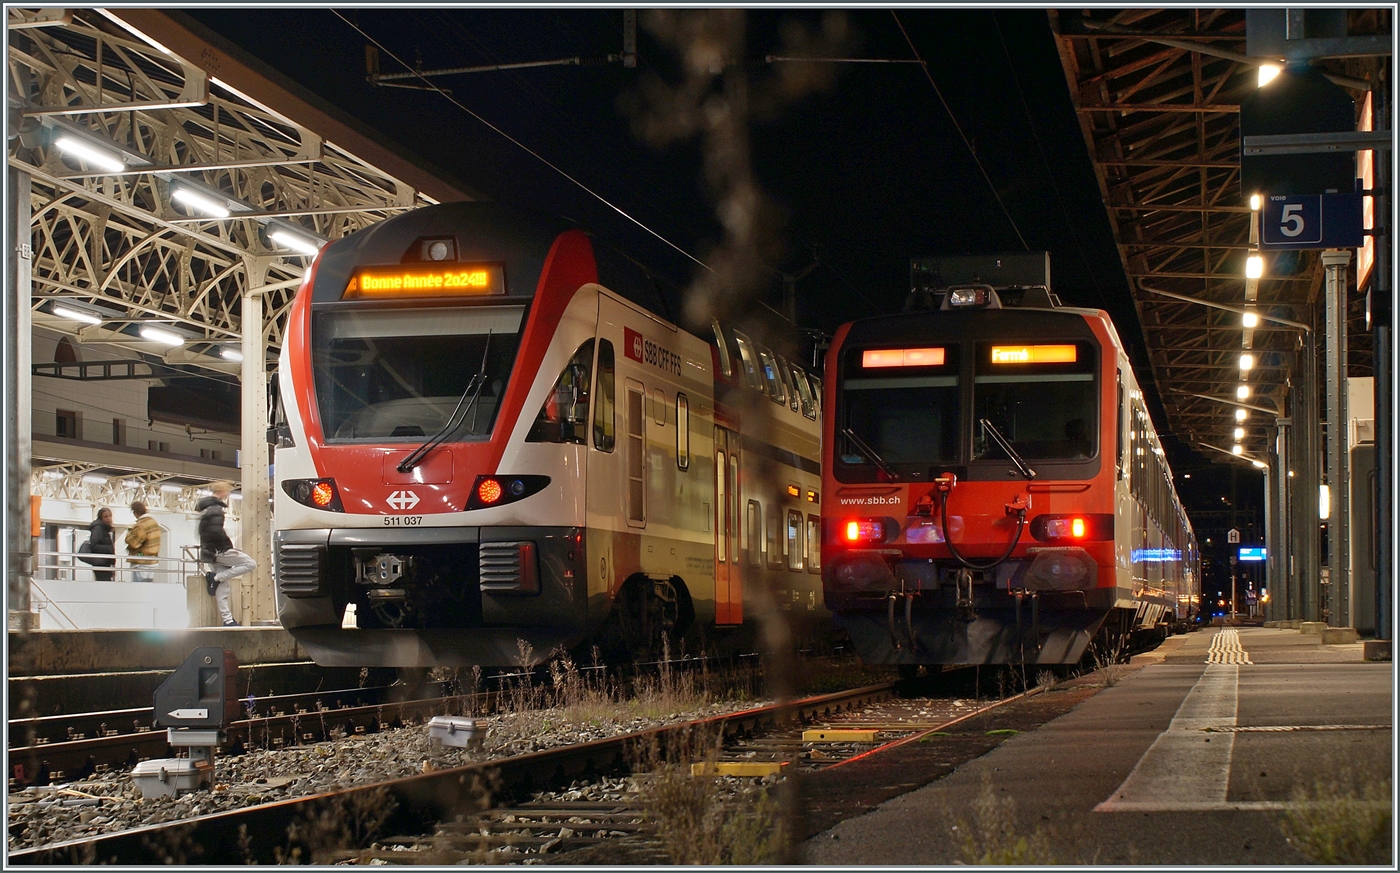 Einige R und RE Züge zeigten statt der Bestimmung-Station die gern entgegengenommen Neujahrswünsche  Bonne Année 2024!!!  Eine gute Idee. 

Der SBB RABe 511 037 wartet in Vevey auf die Rückfahrt nach Annemasse. 

1. Januar 2024